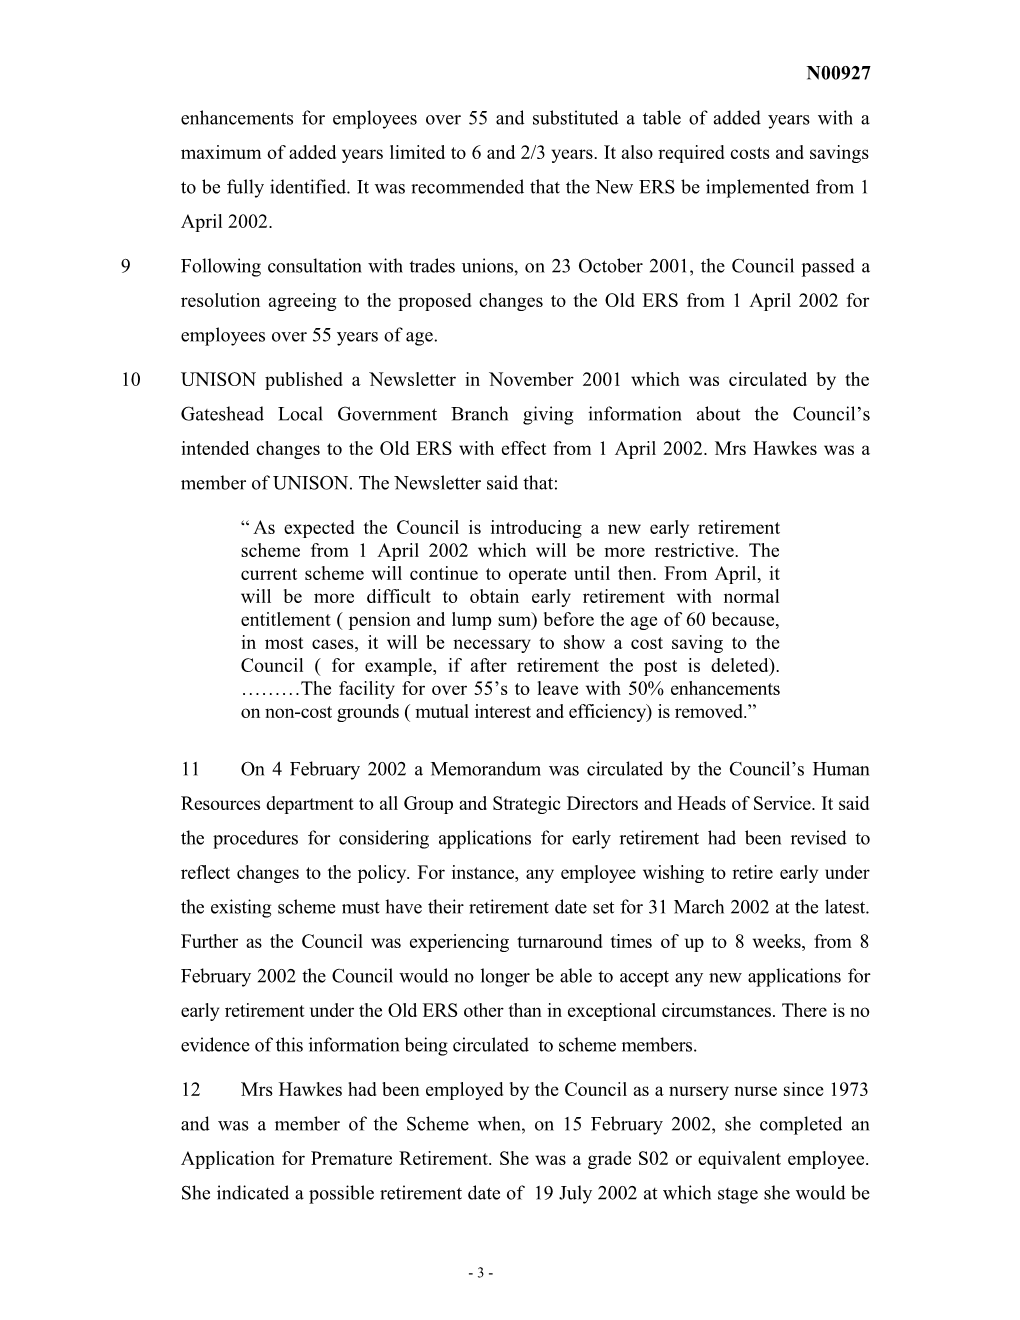 Pension Schemes Act 1993, Part X s131